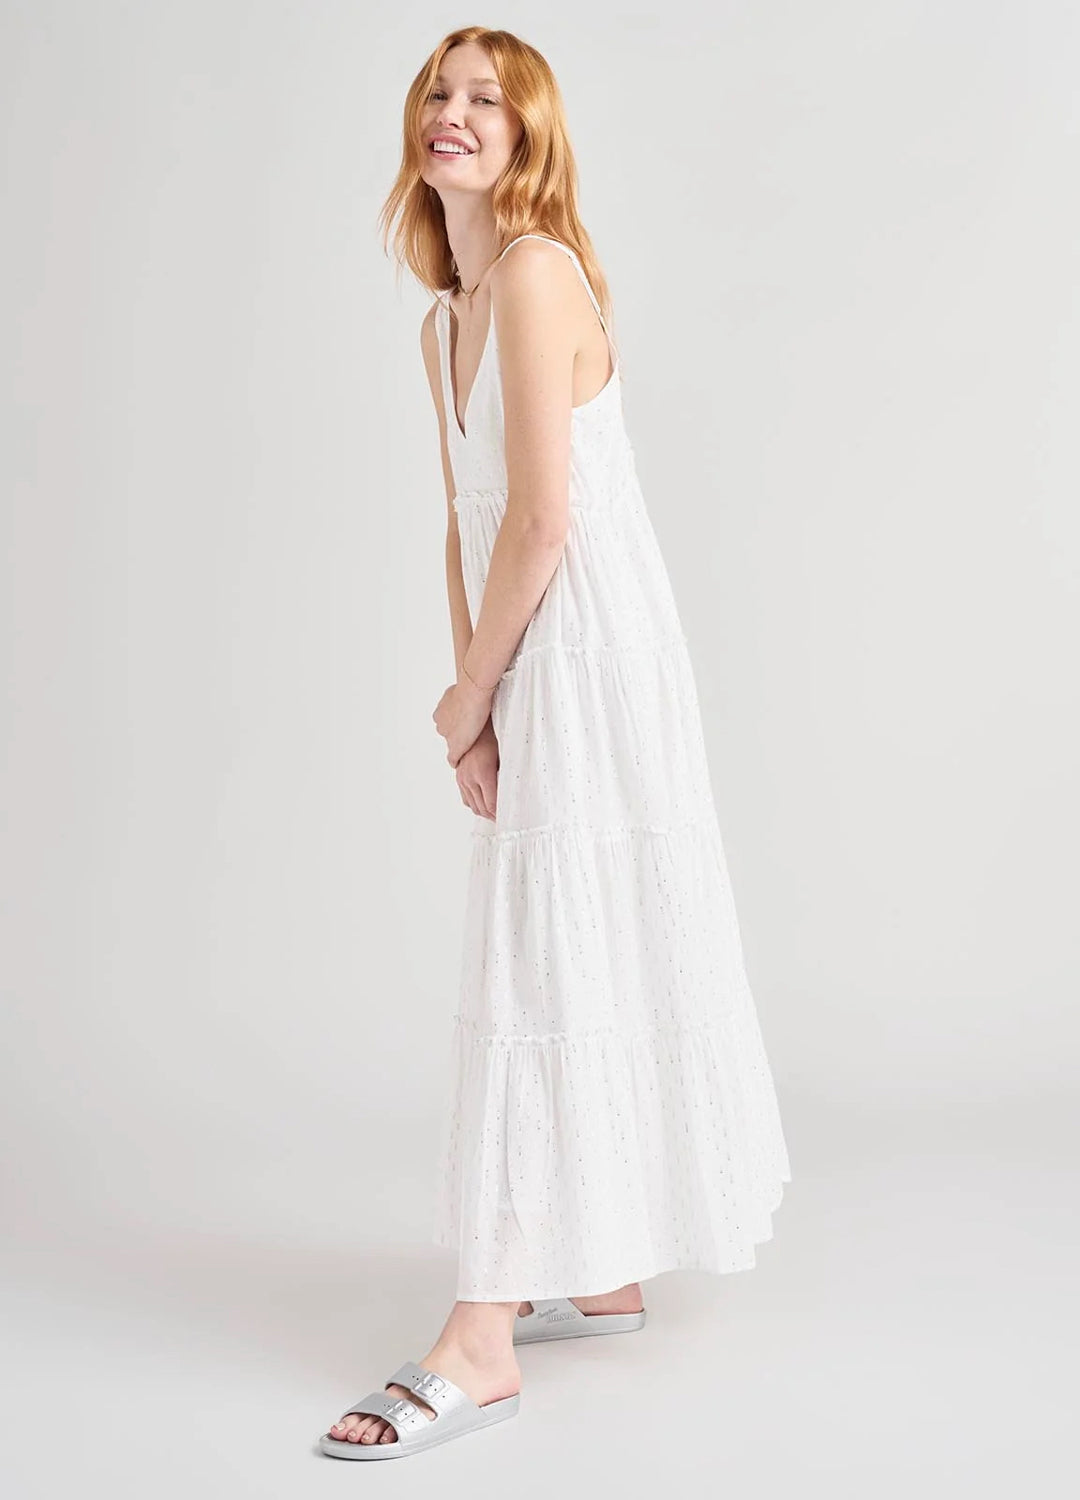 Gwendolyn Dress - White